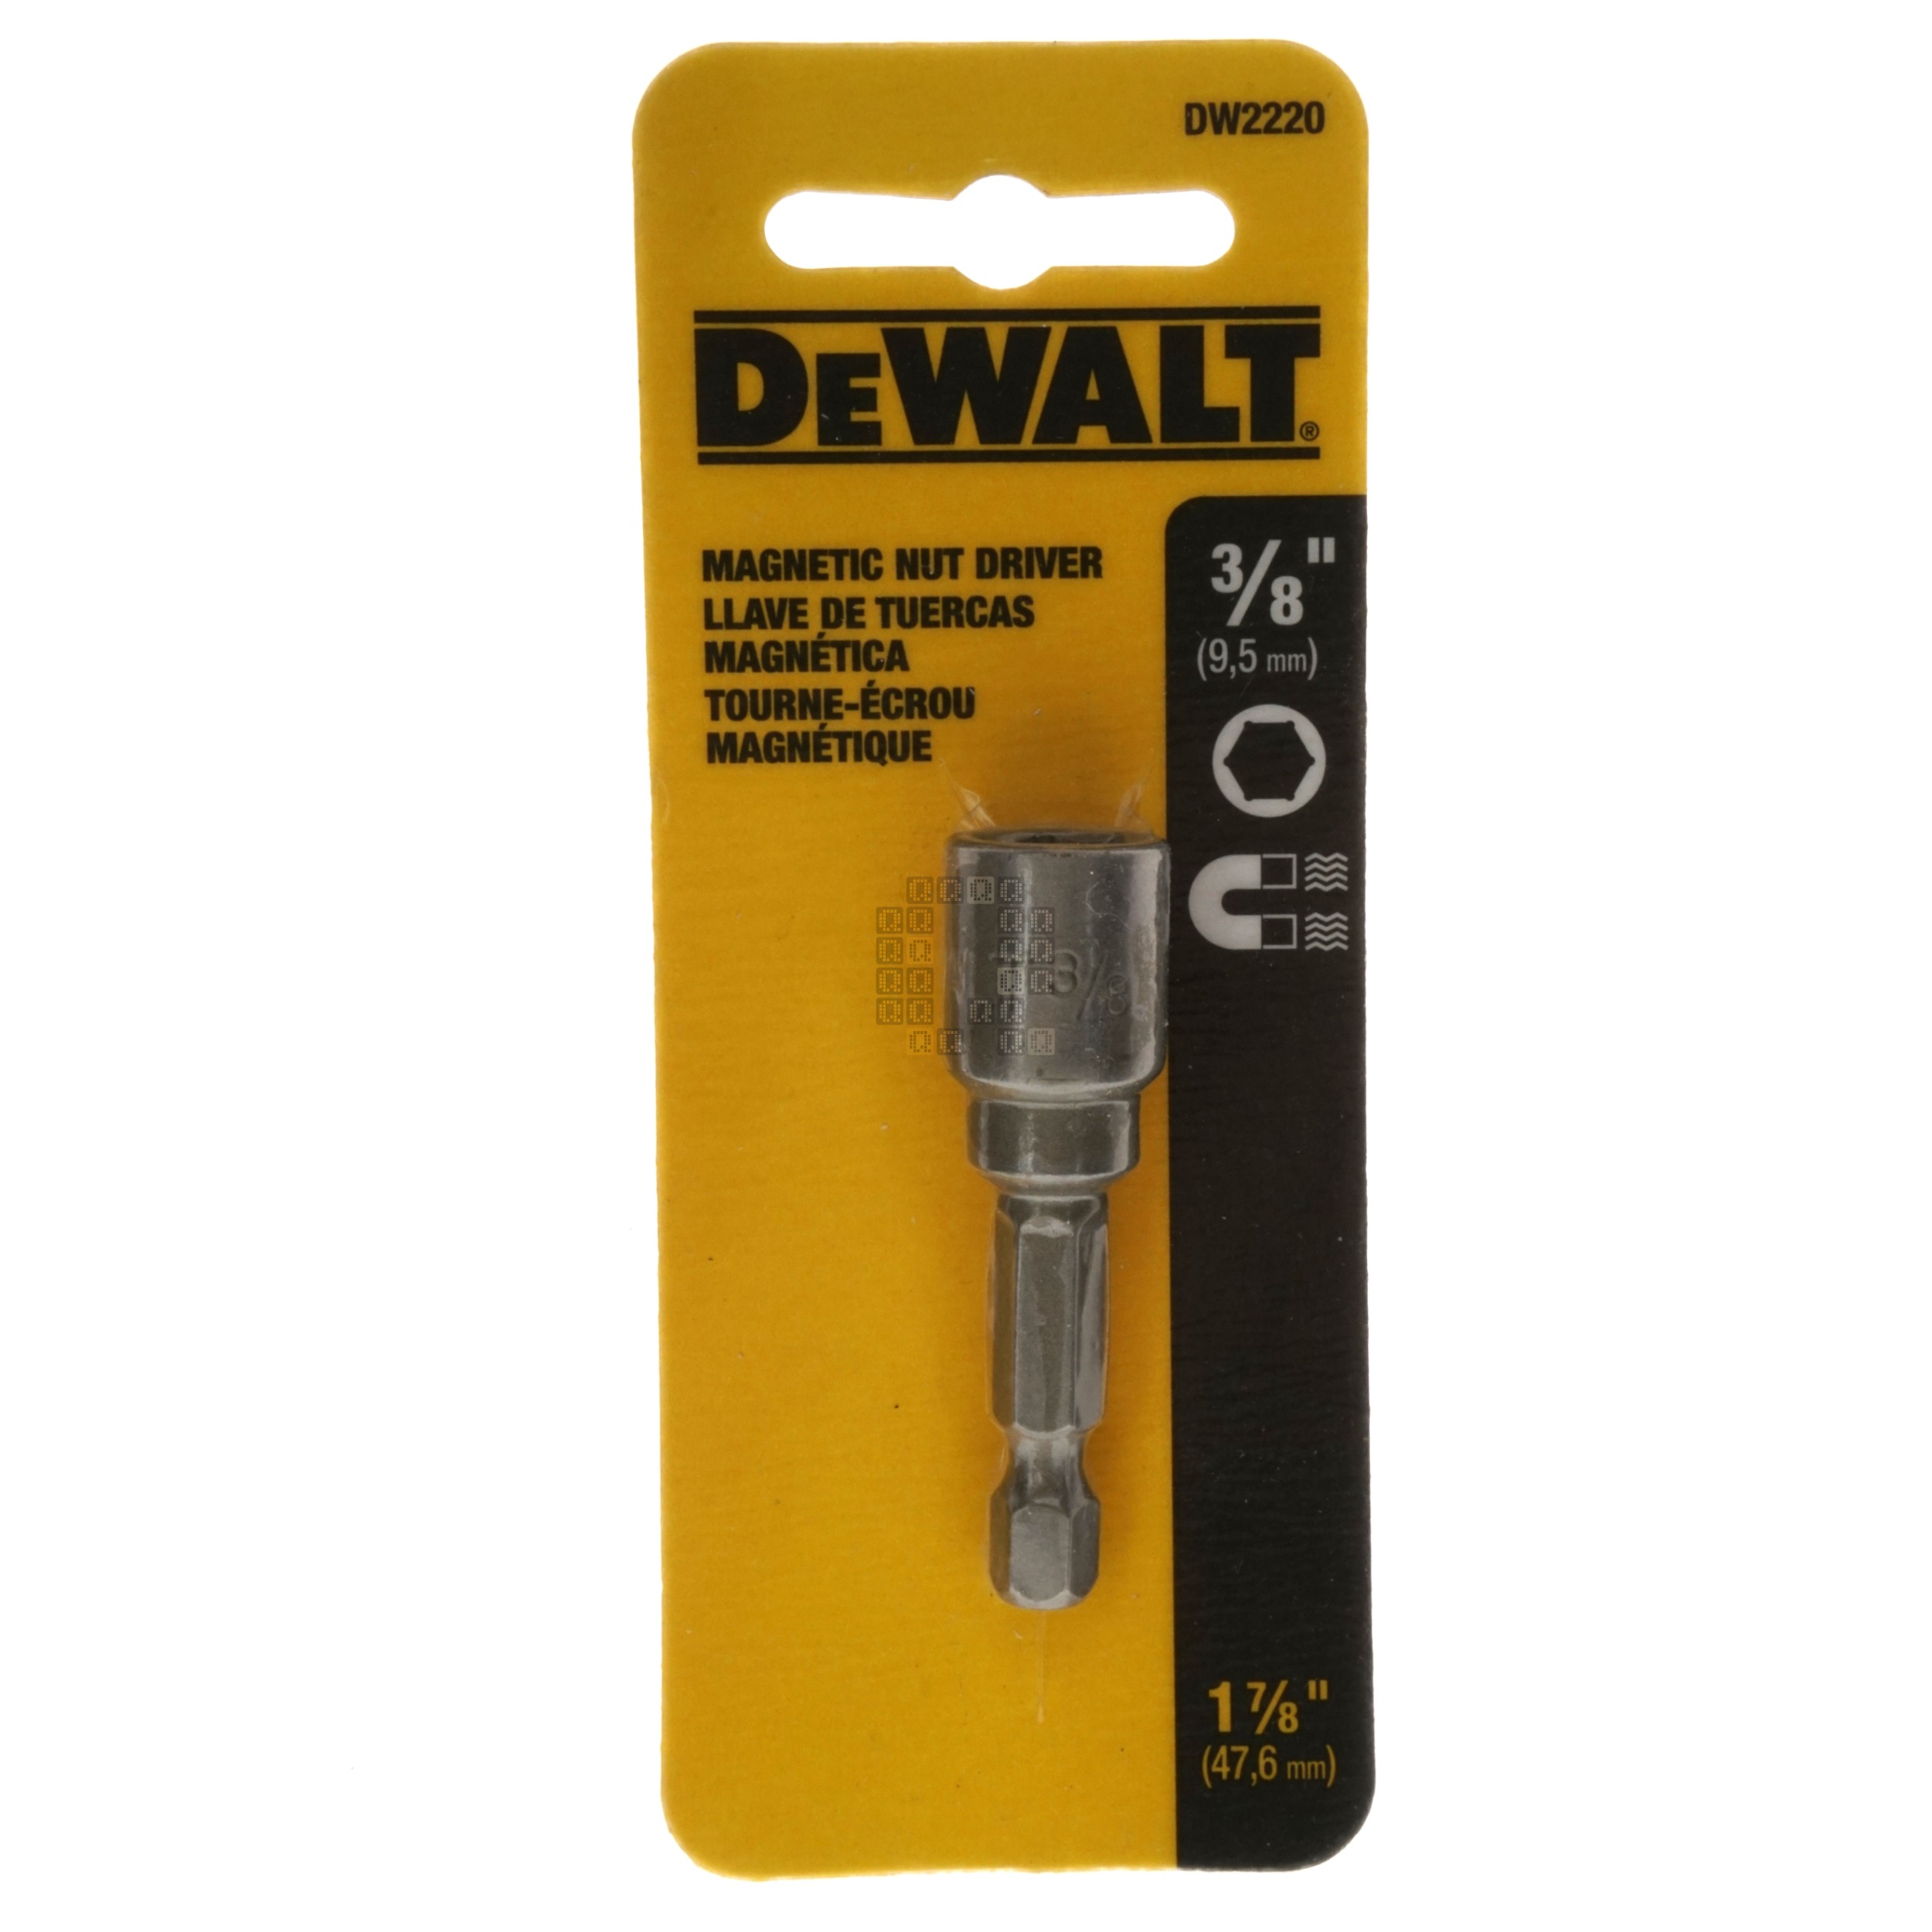 DeWALT DW2220 3/8" Magnetic Nut Driver, 1-7/8" Length